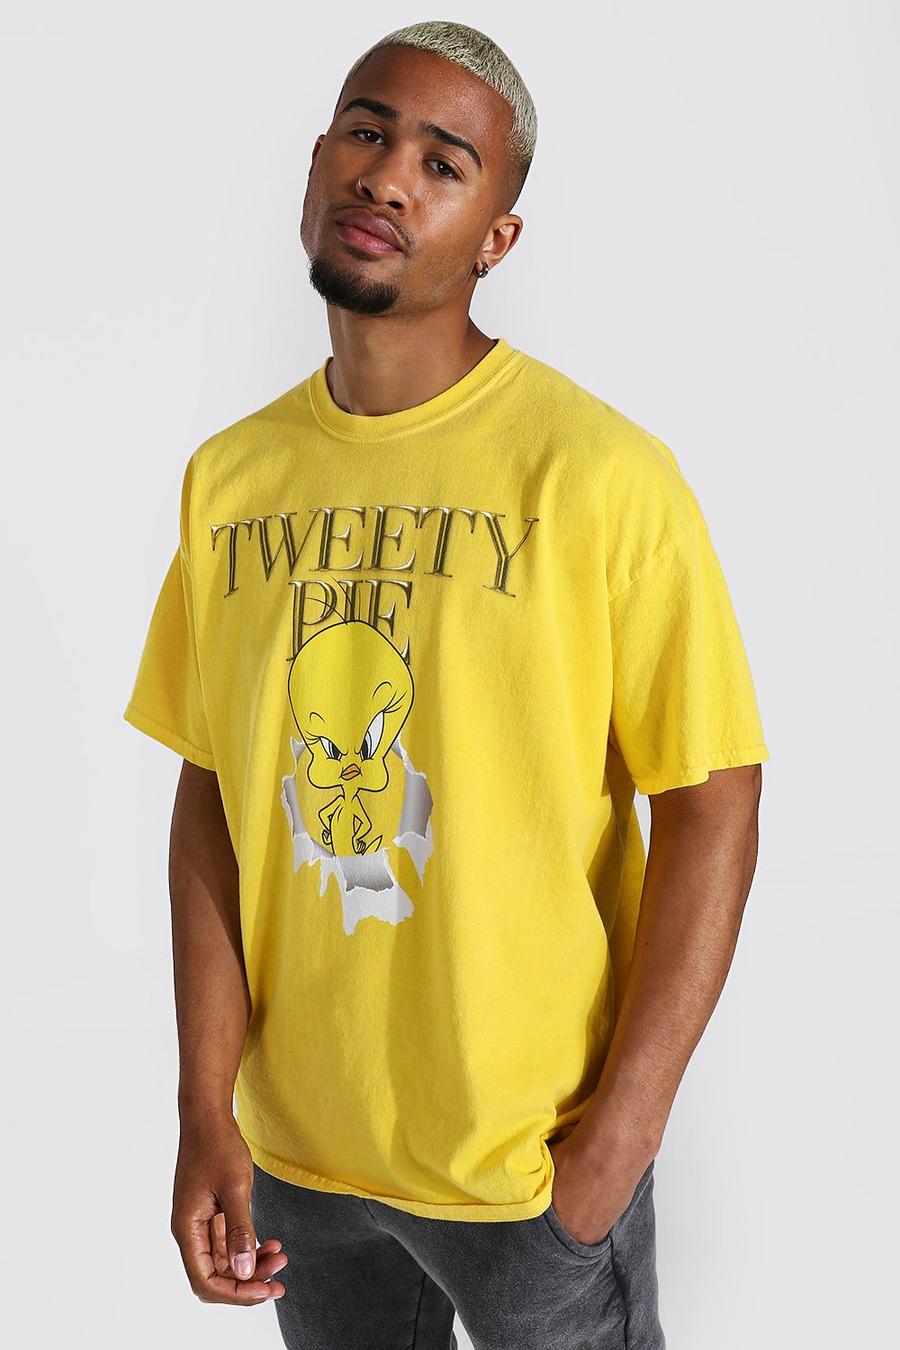 צהוב giallo טישרט אוברסייז בצביעה כפולה ממותג עם הדפס Tweety Pie